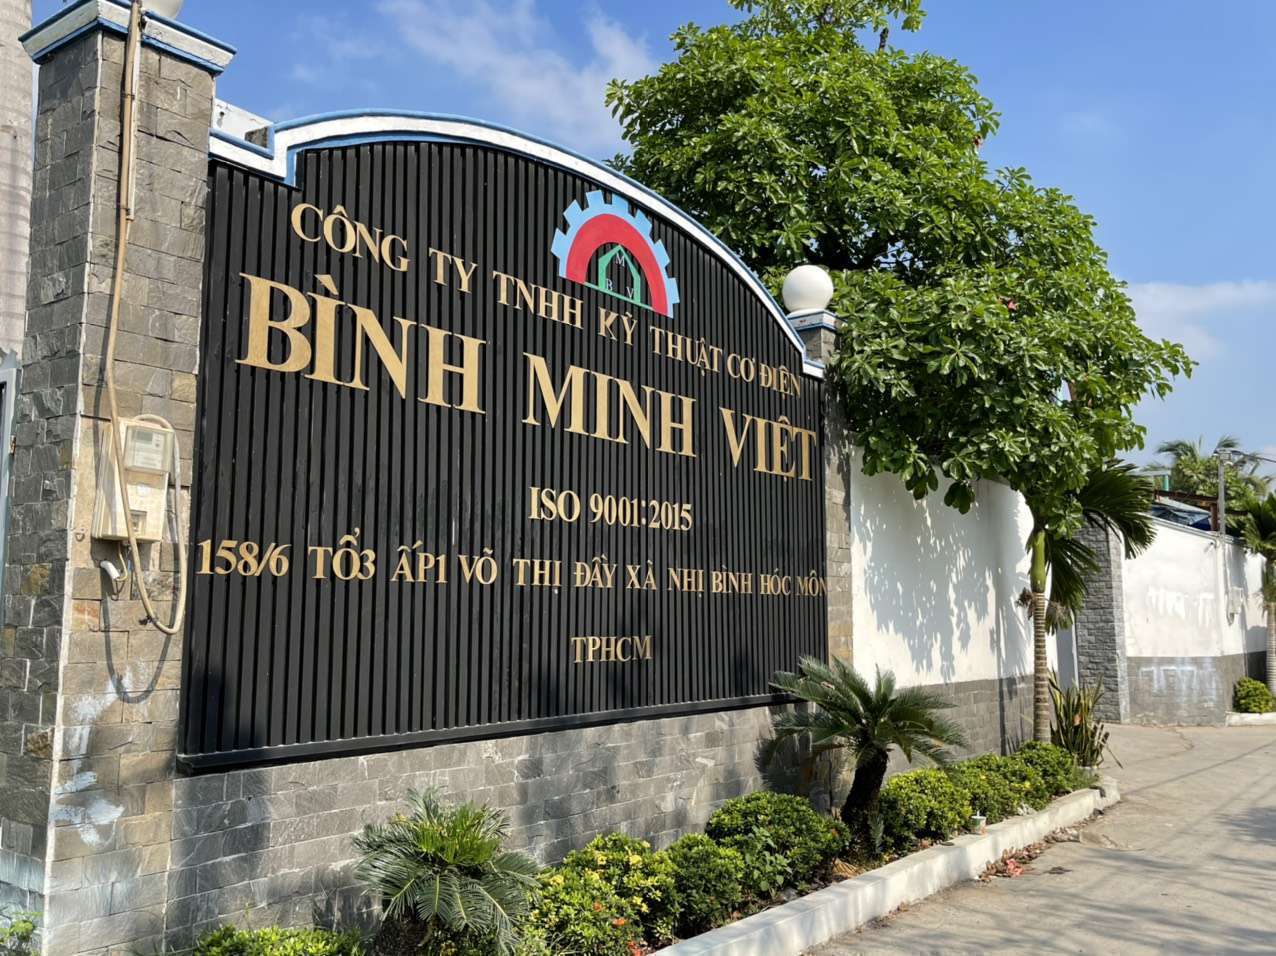 Cảm ơn Nhà tài trợ Giải cầu lông VNB mở rộng lần 1: Công ty TNHH Kỹ Thuật Cơ Điện Bình Minh Việt